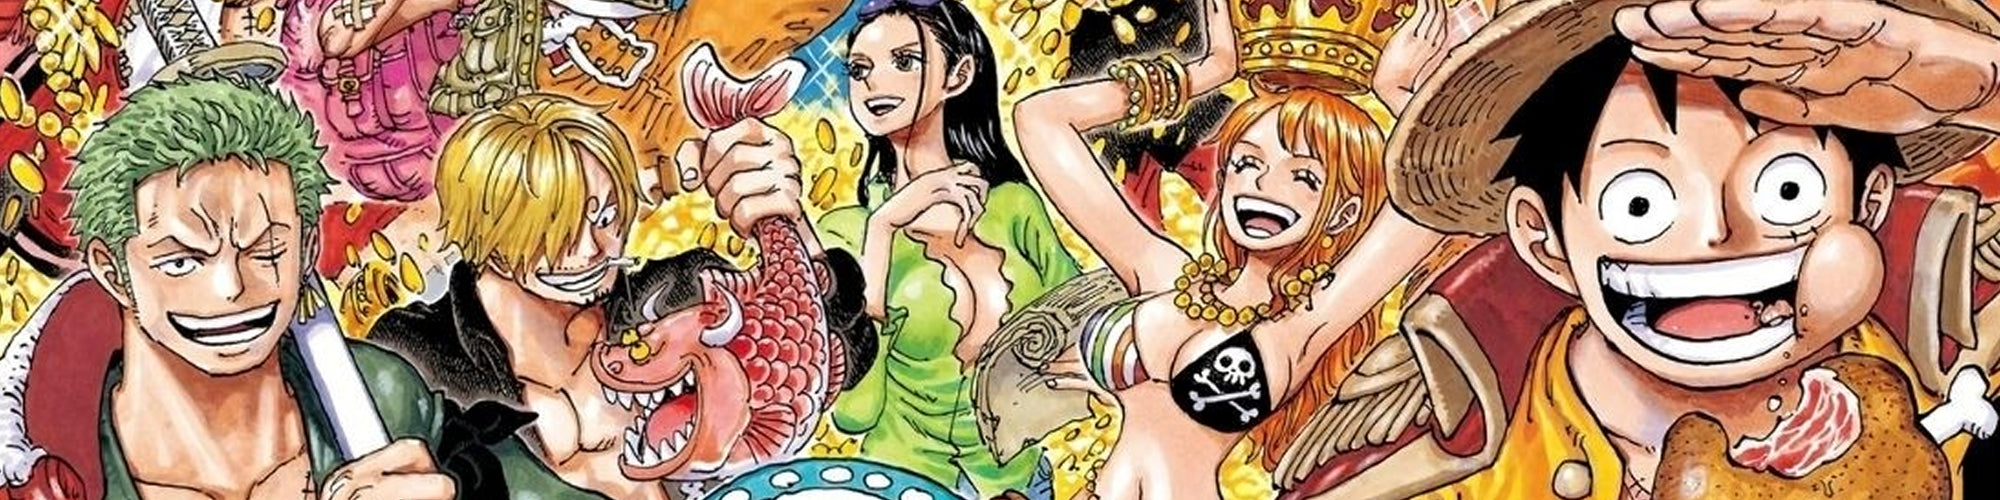 One Piece continua con sus records: el manga logra un nuevo hito histórico.